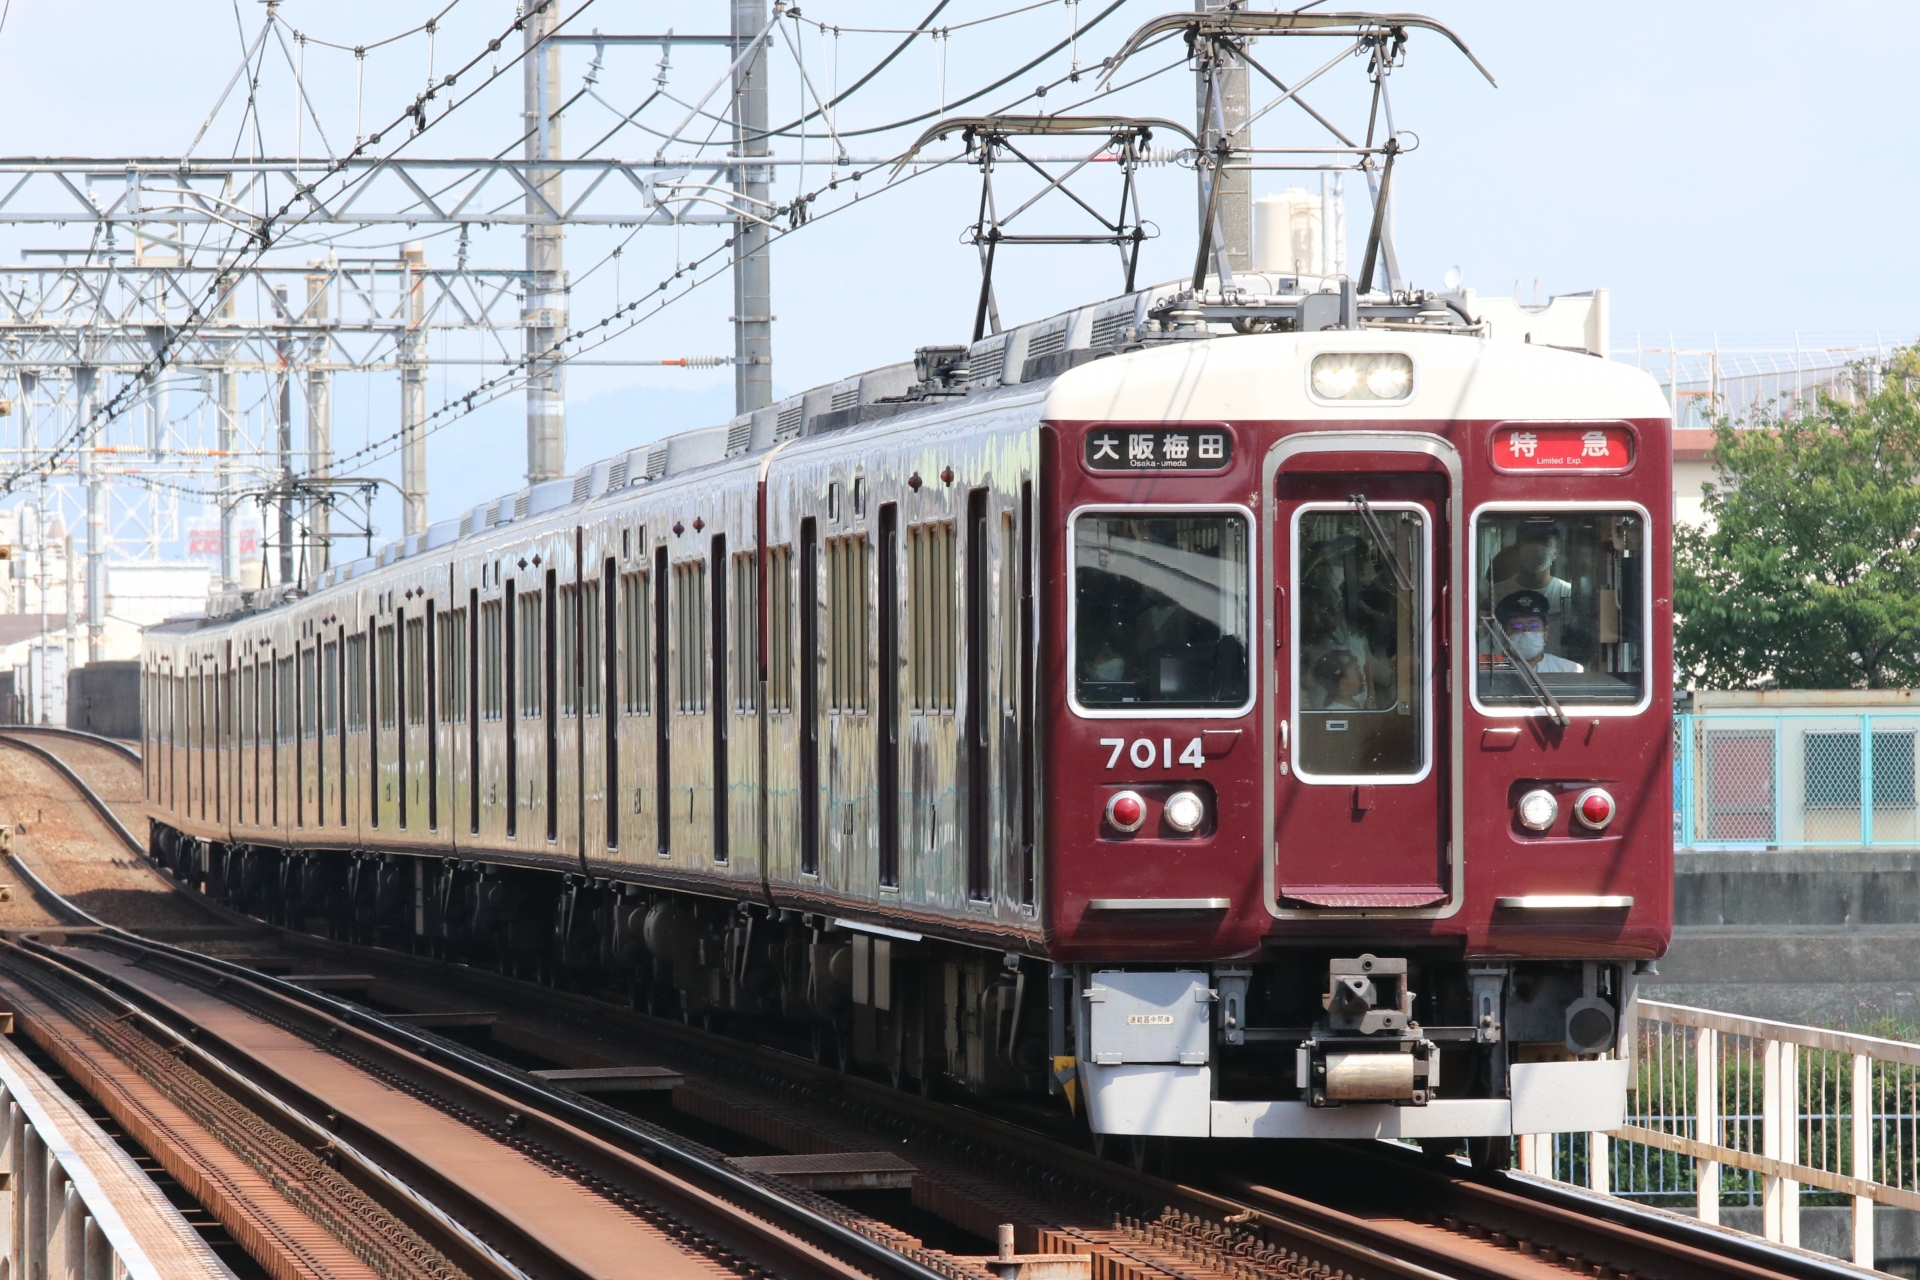 梅田と三宮を結ぶ阪急神戸線。路線距離は約32キロメートルで、その間に16駅が設置されている。JRや阪神電車よりも六甲山川を走っているのが特徴だ。